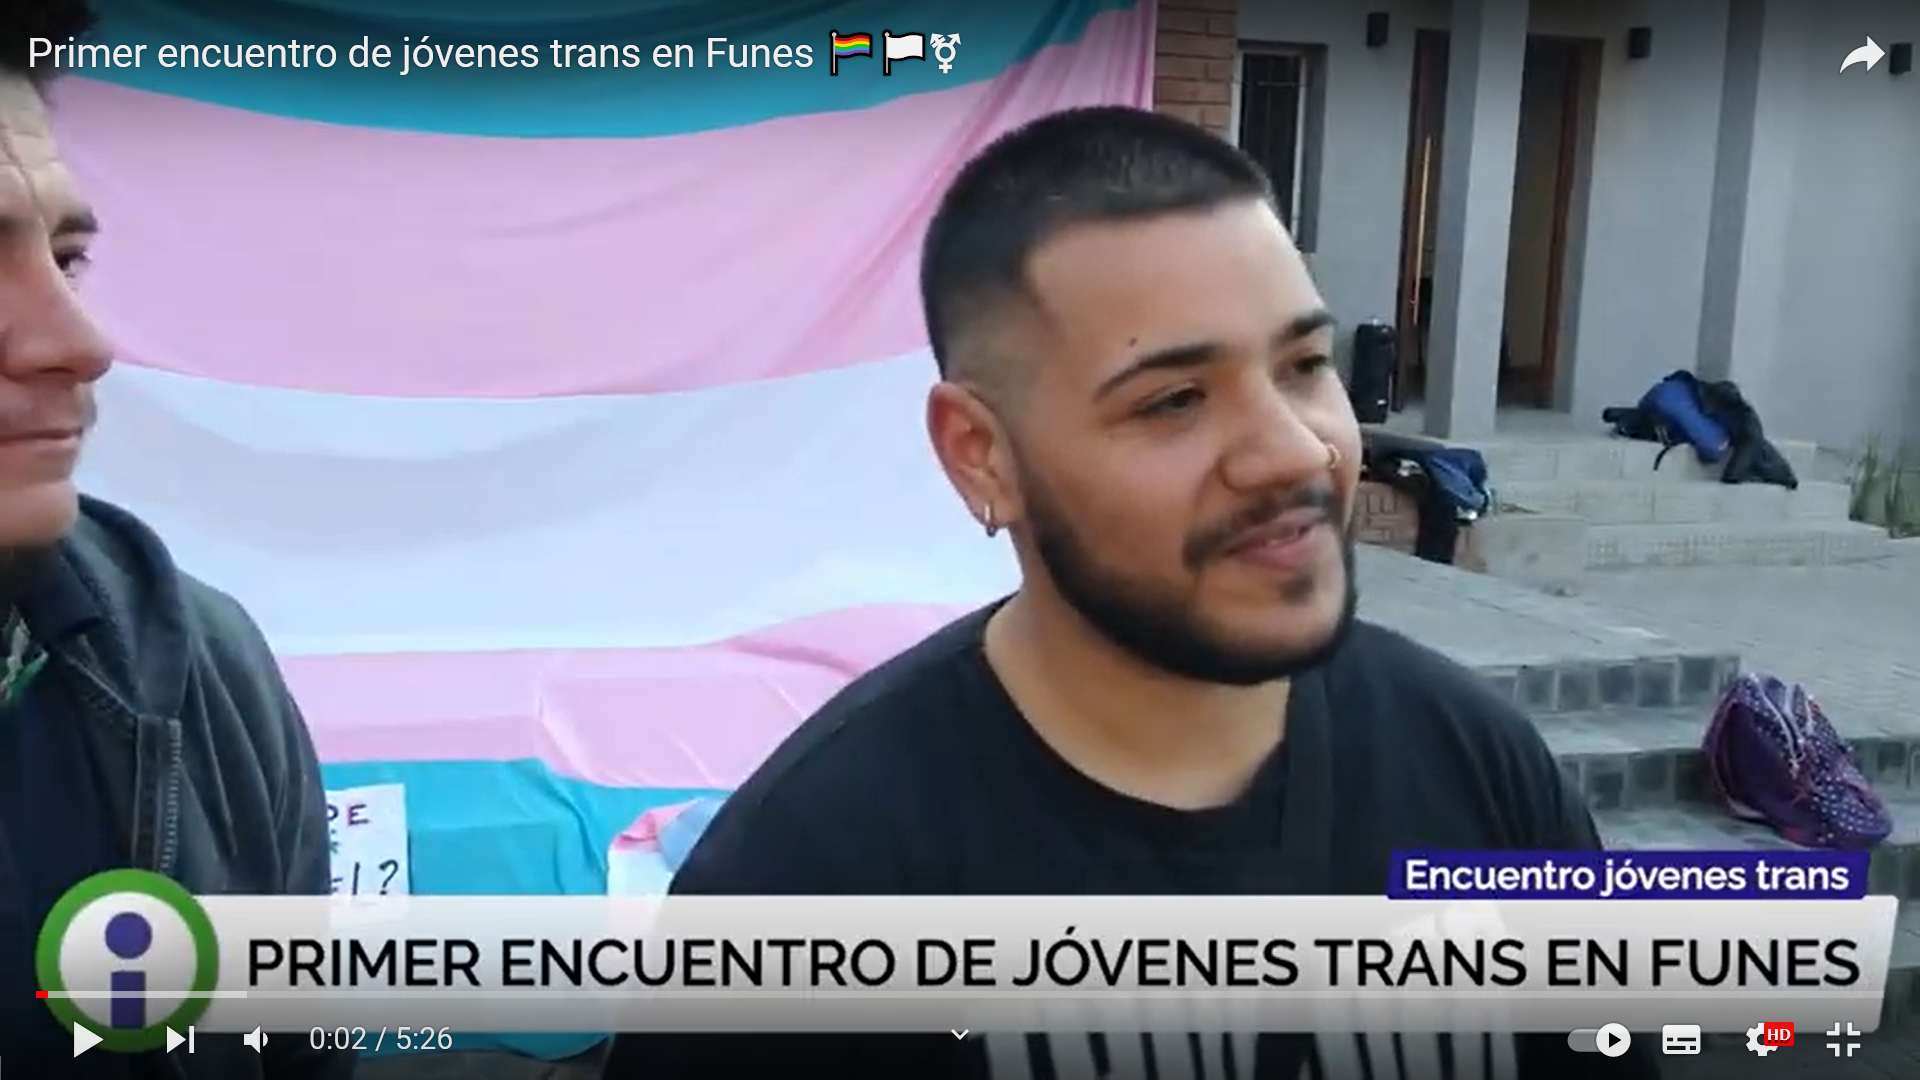 Por impulso de jóvenes y familias locales, Funes tuvo su primer encuentro de jóvenes trans 